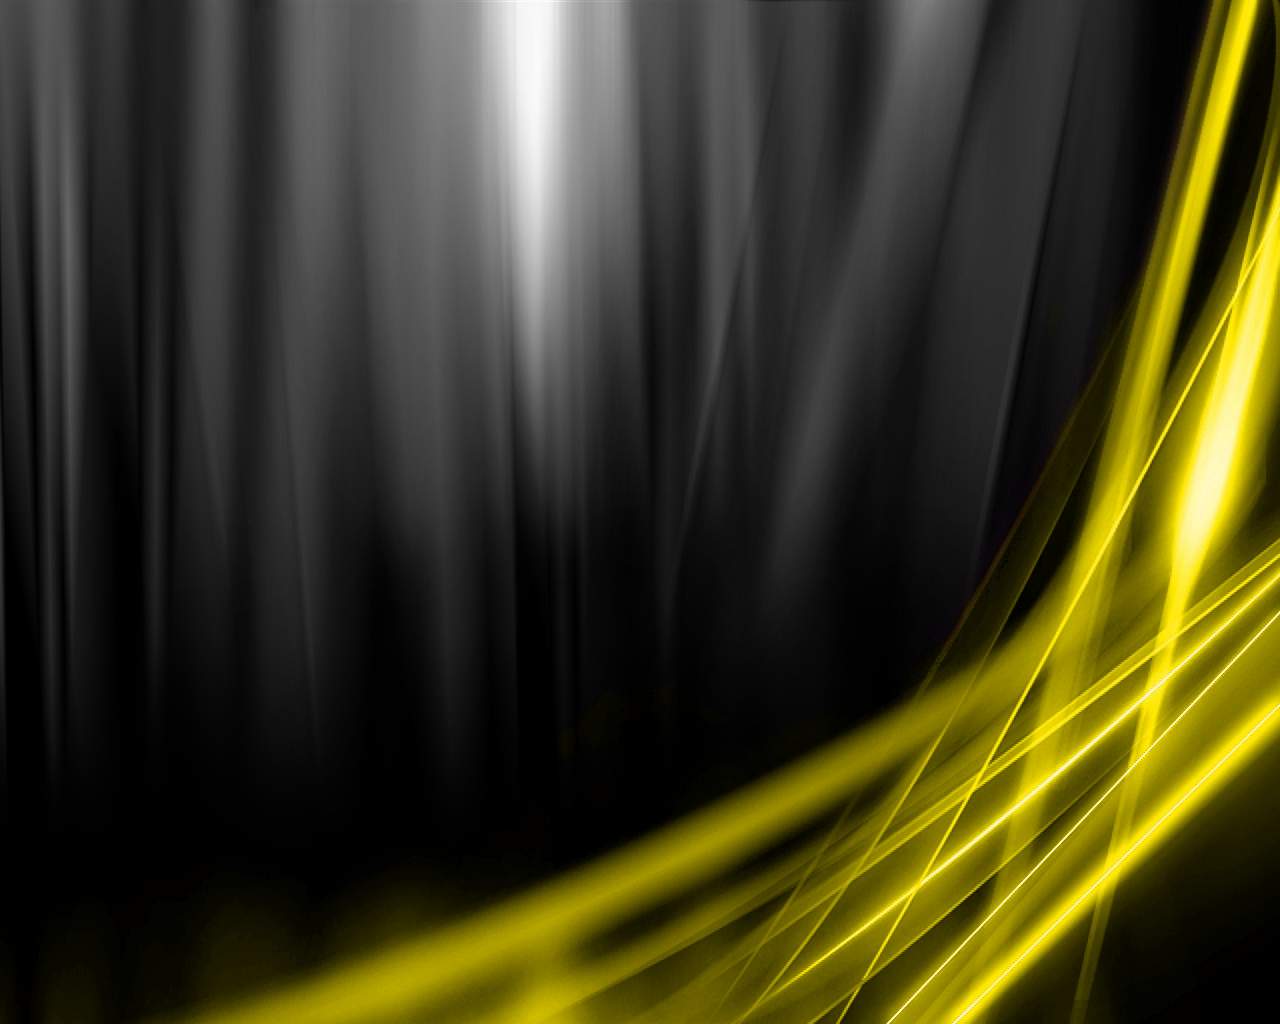 49+] Black and Yellow Wallpaper - WallpaperSafari